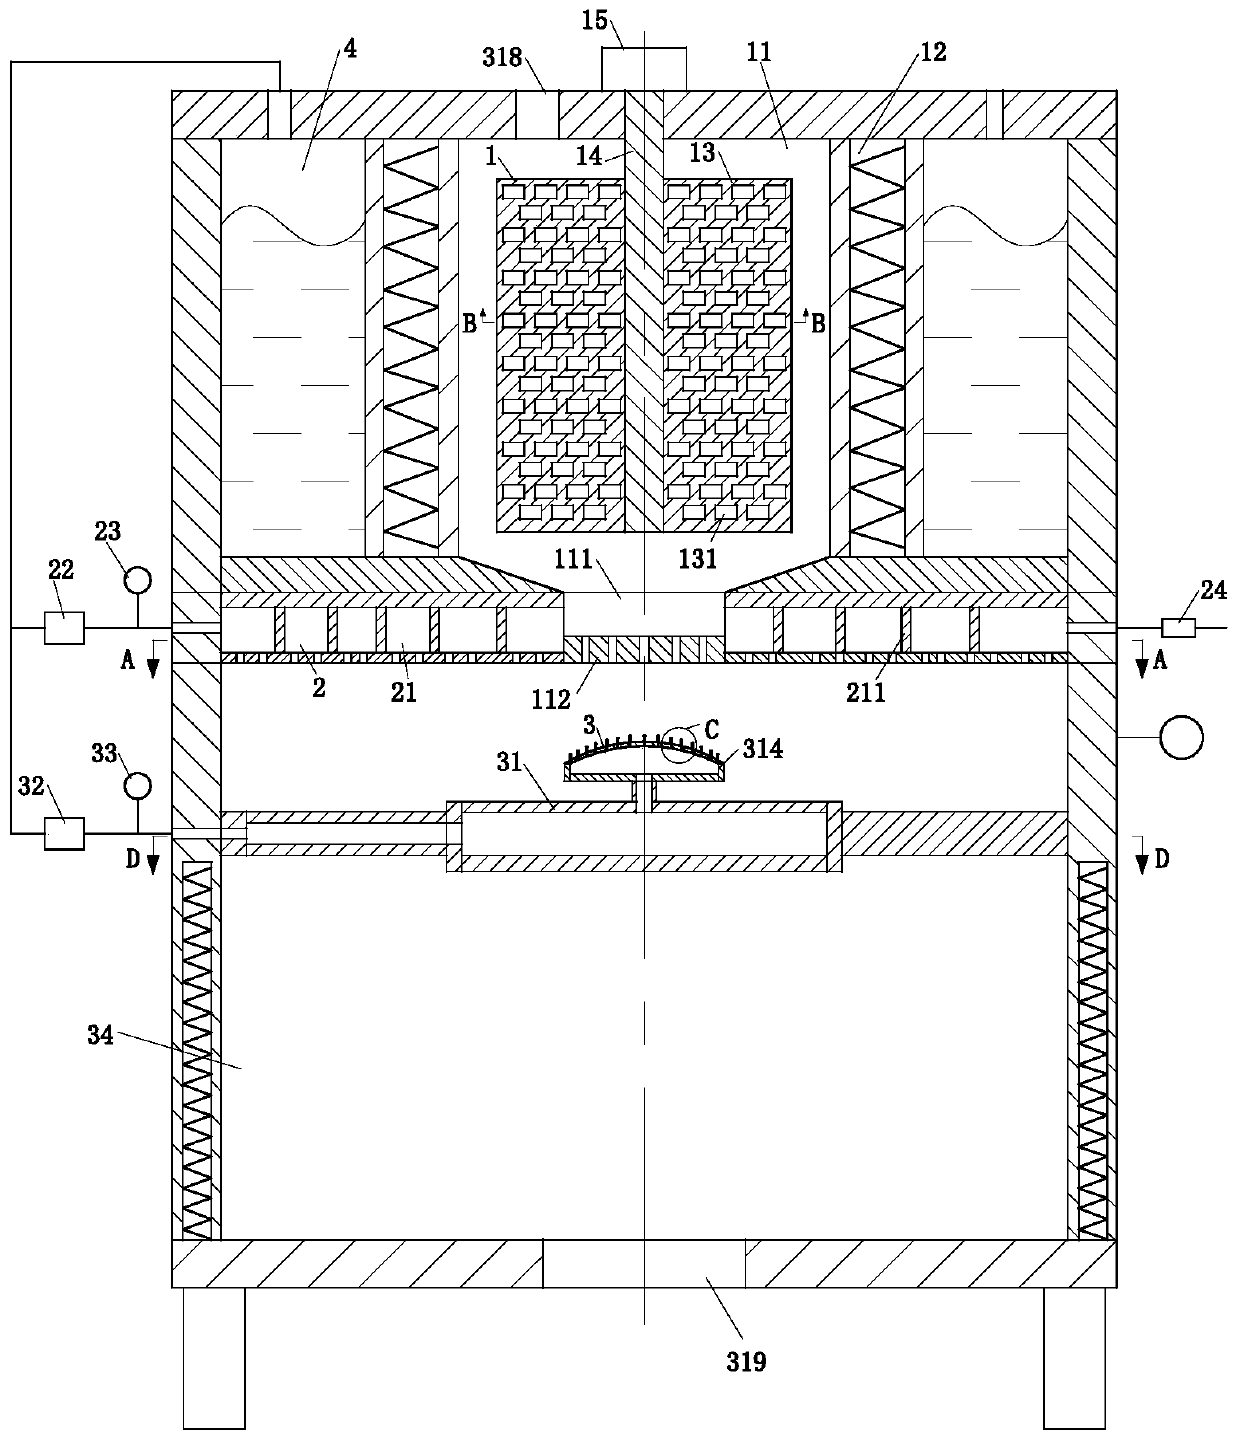 A polyurethane insulation board foaming system